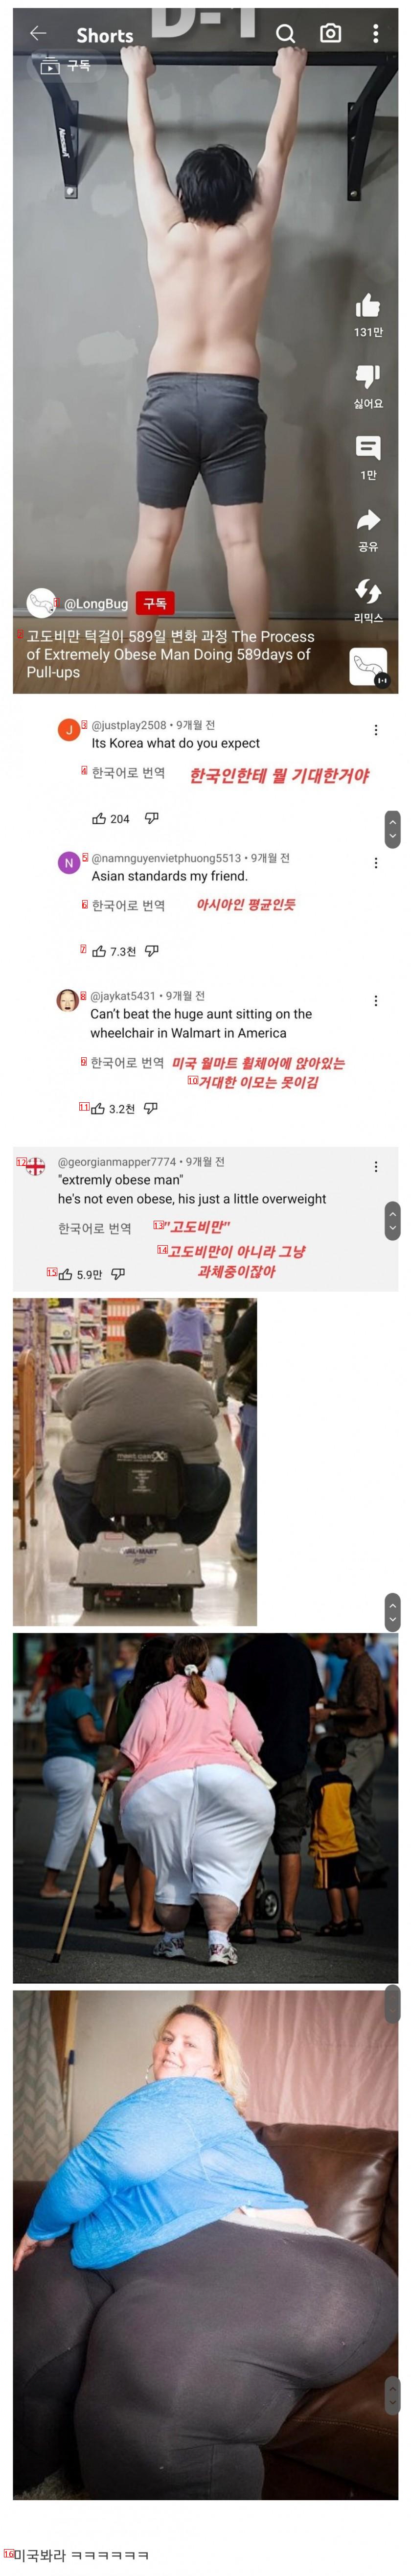 高度肥満の韓国人の運動映像を見たアメリカ人たち